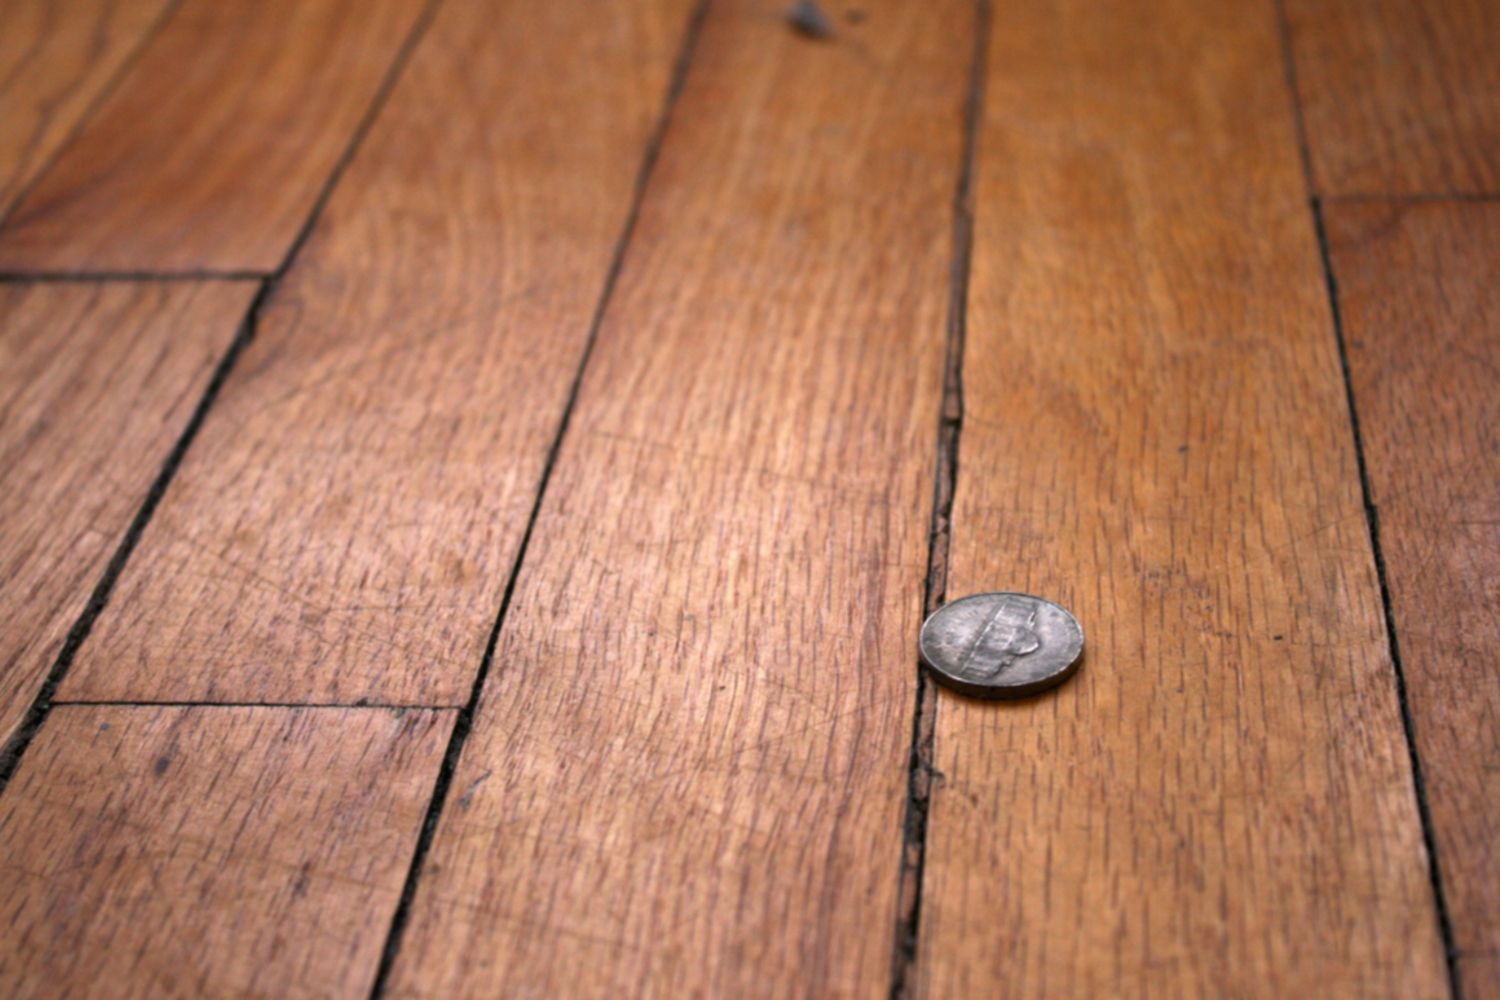 1 1 2 inch wide hardwood flooring of how to repair gaps between floorboards regarding wood floor with gaps between boards 1500 x 1000 56a49eb25f9b58b7d0d7df8d